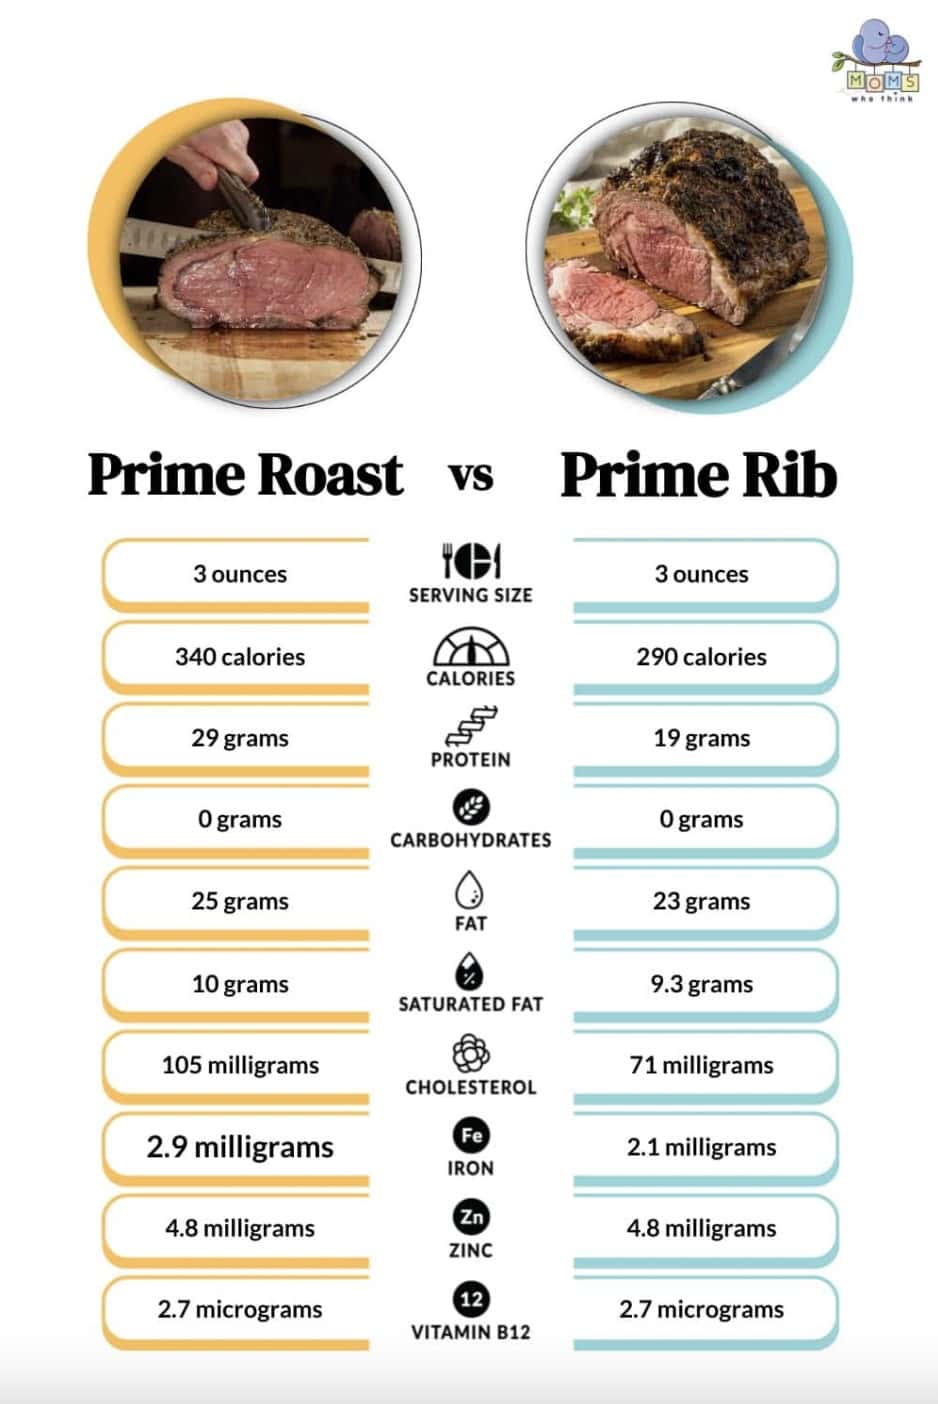 Prime Roast vs. Prime Rib